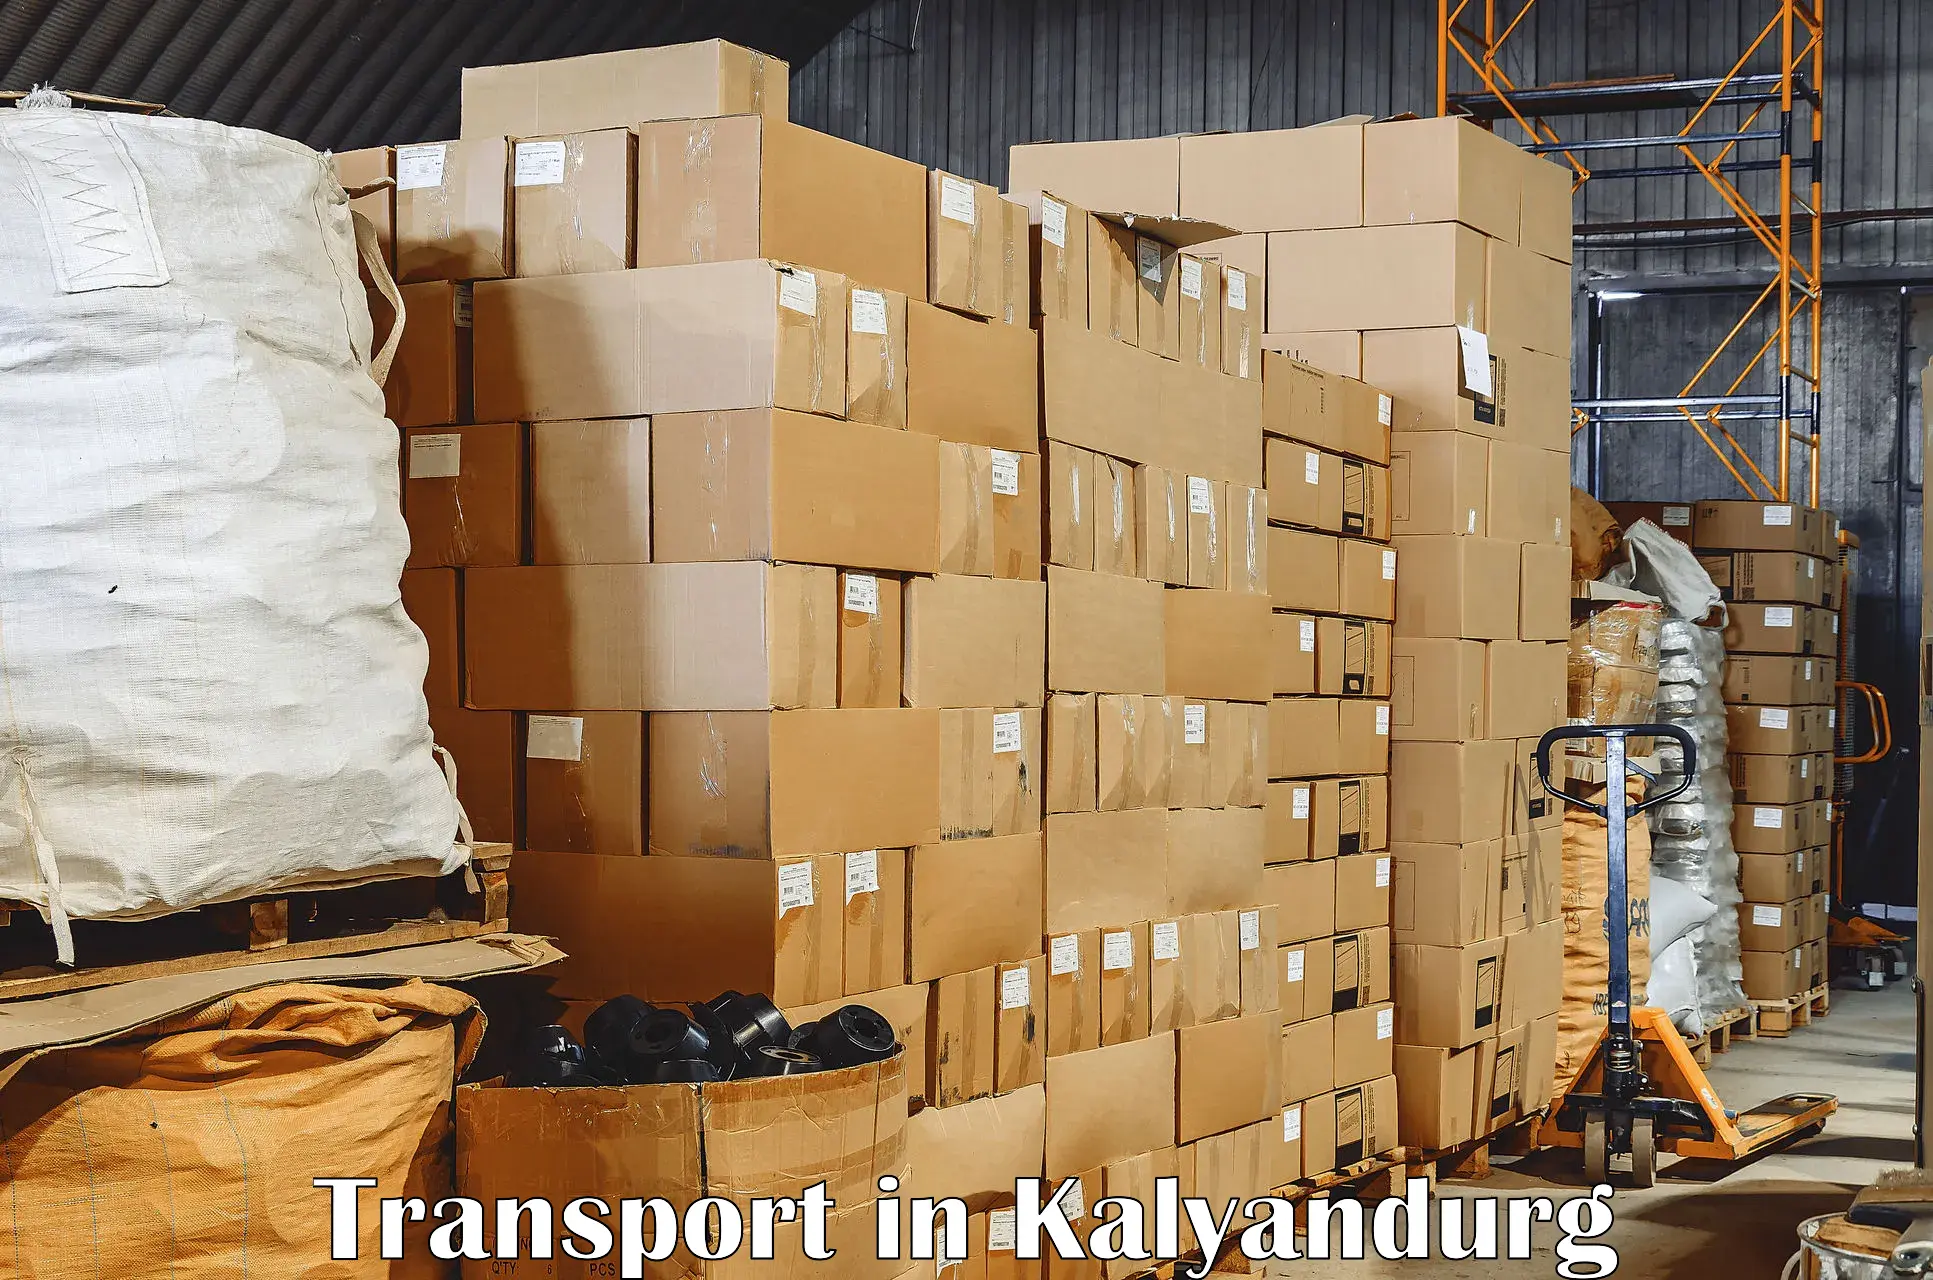 Air cargo transport services in Kalyandurg